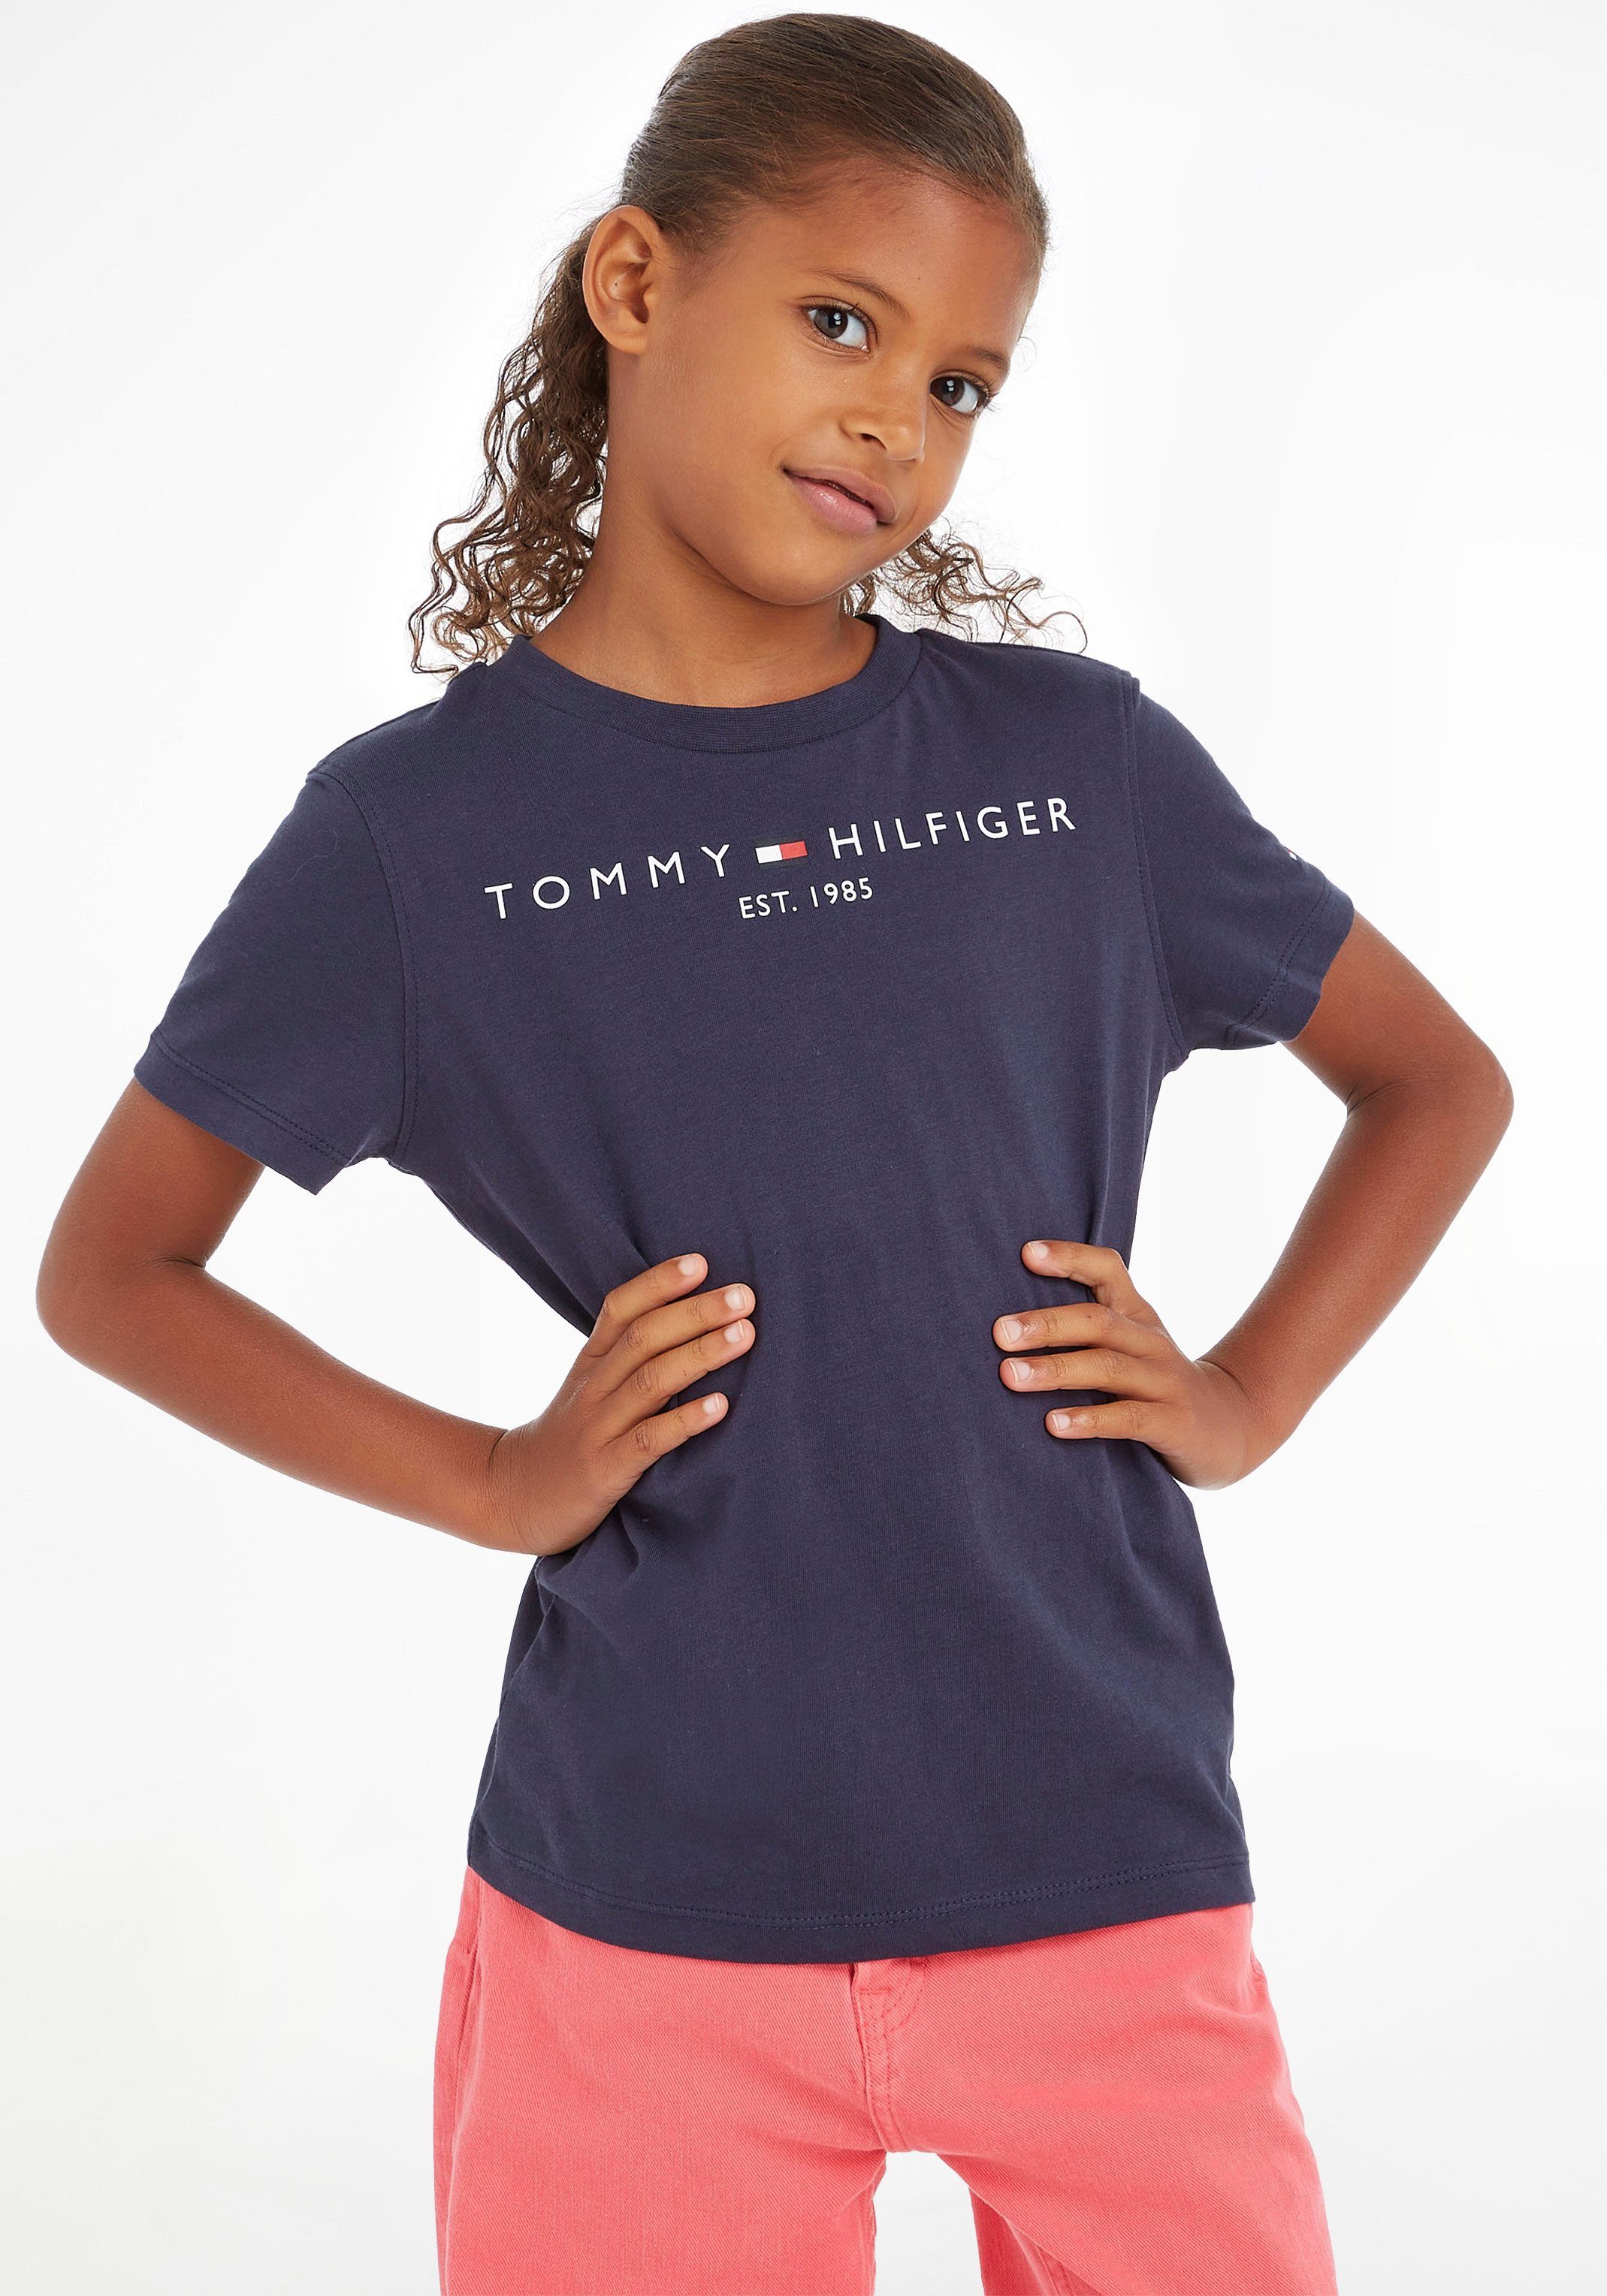 und ESSENTIAL TEE für Tommy Hilfiger T-Shirt Jungen Mädchen